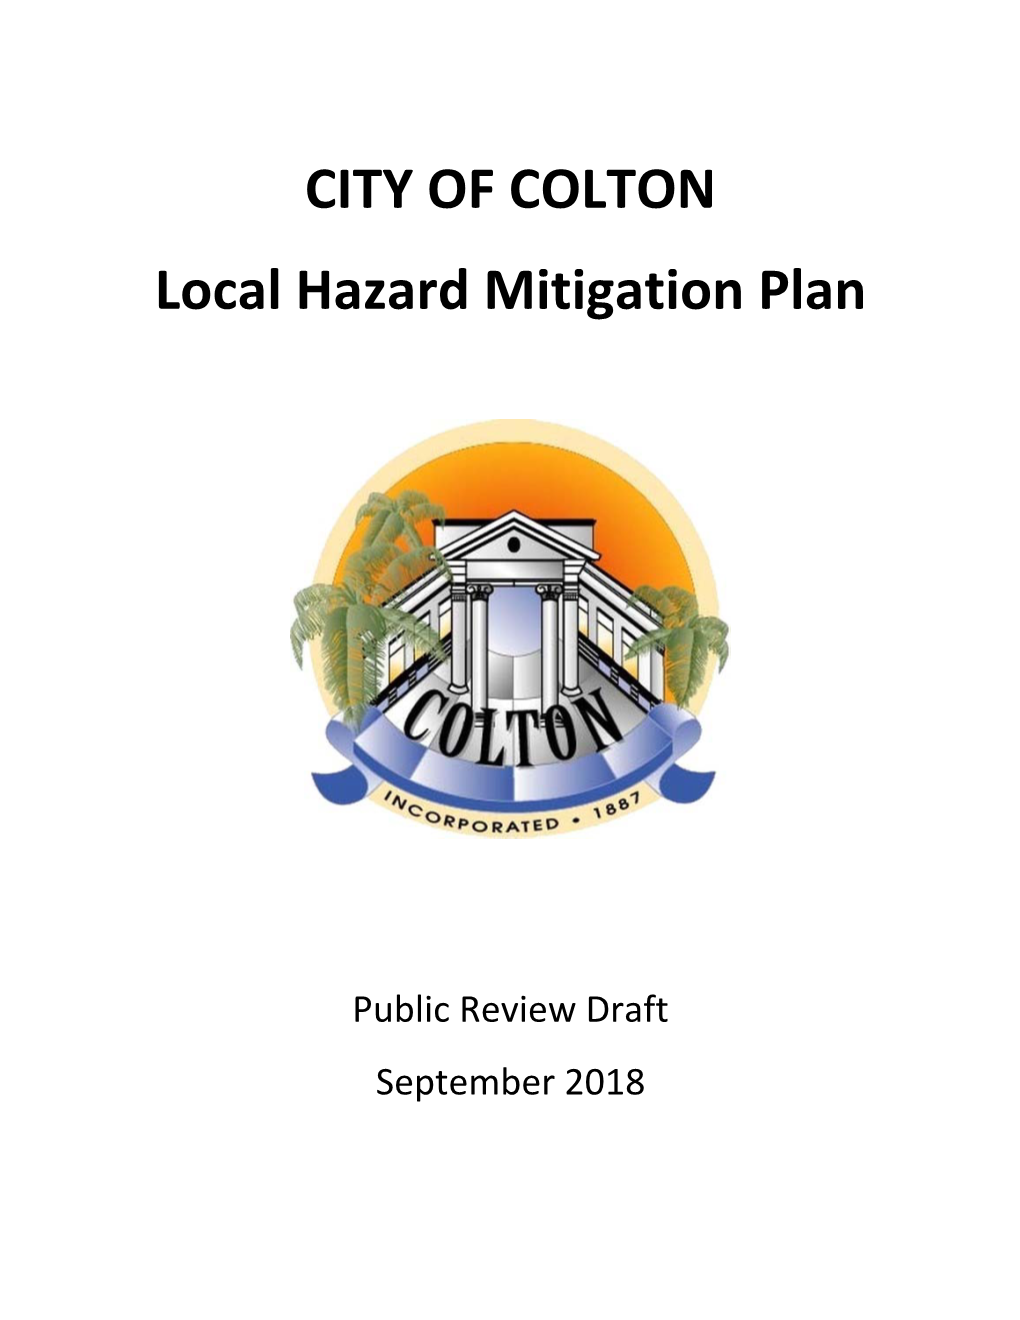 CITY of COLTON Local Hazard Mitigation Plan